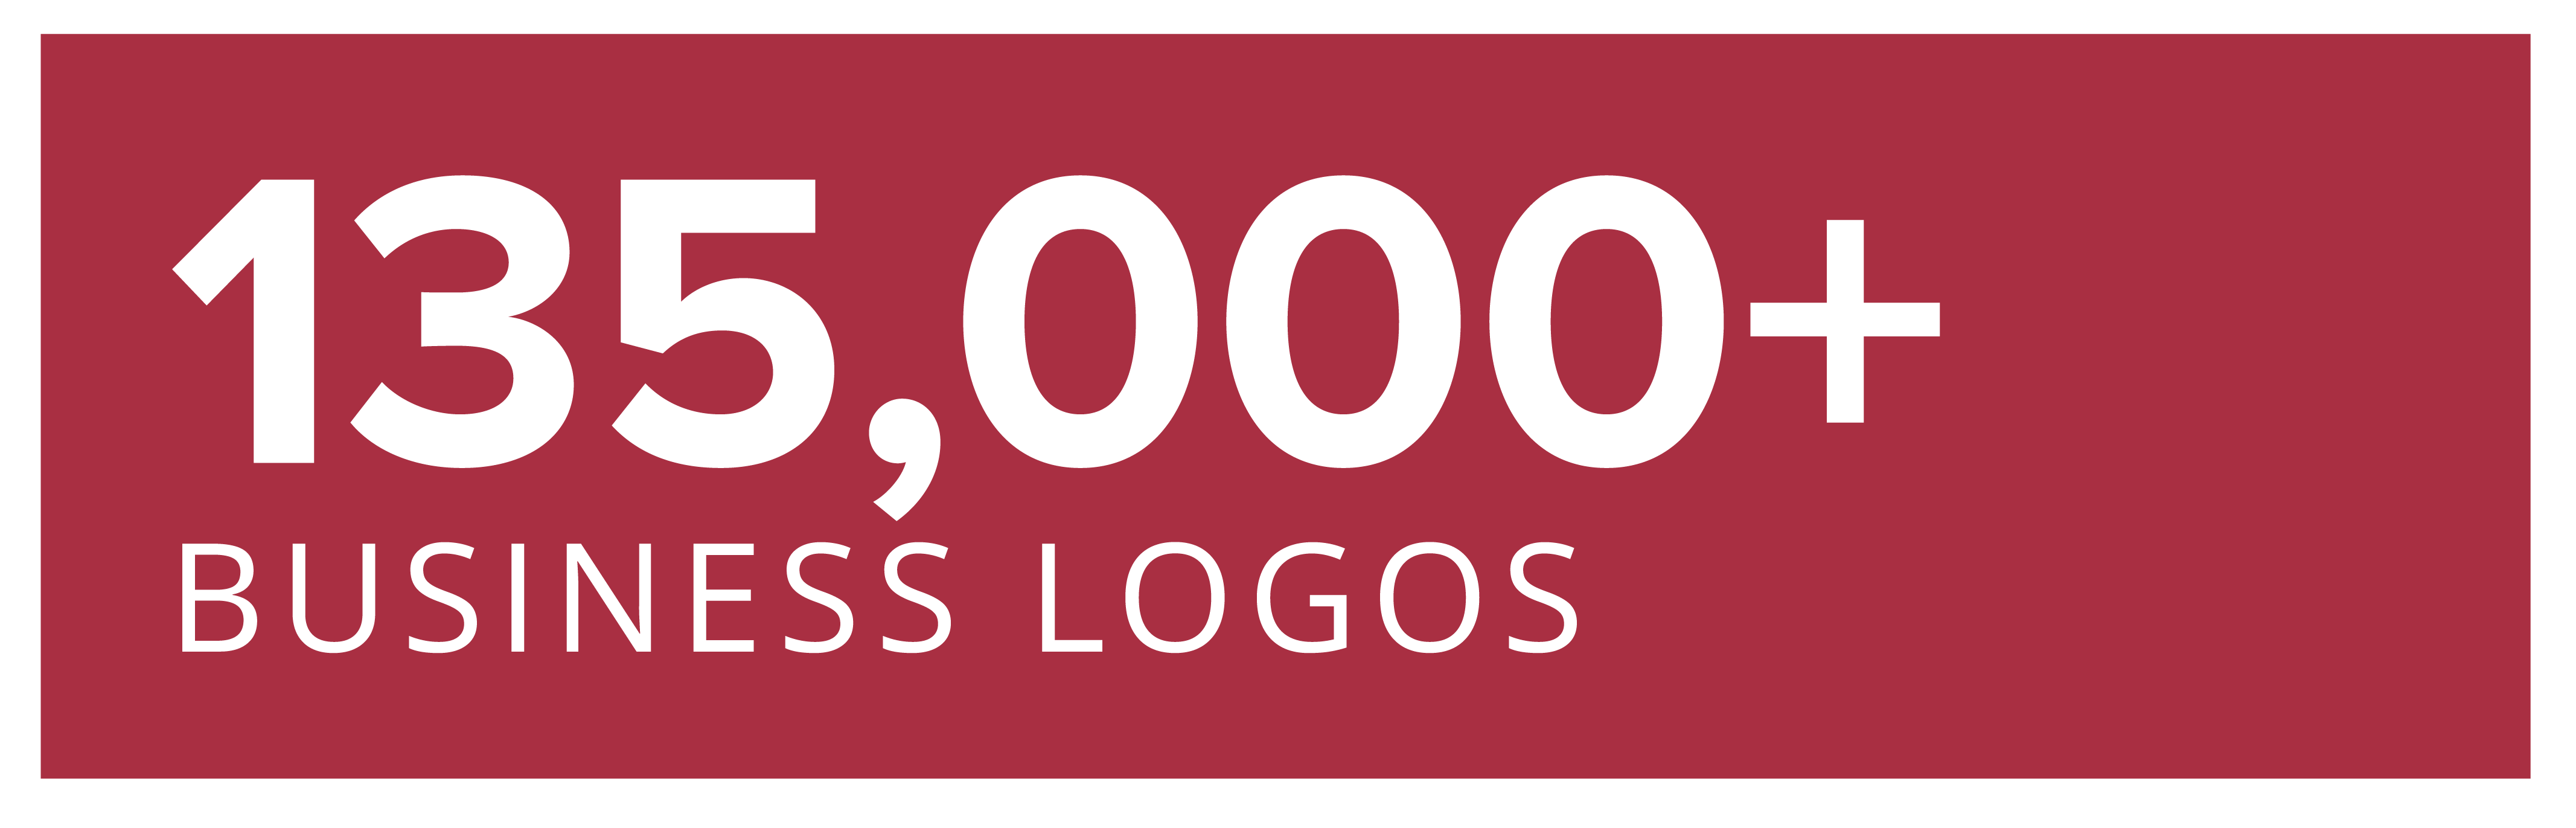 135,000+ Business Logos